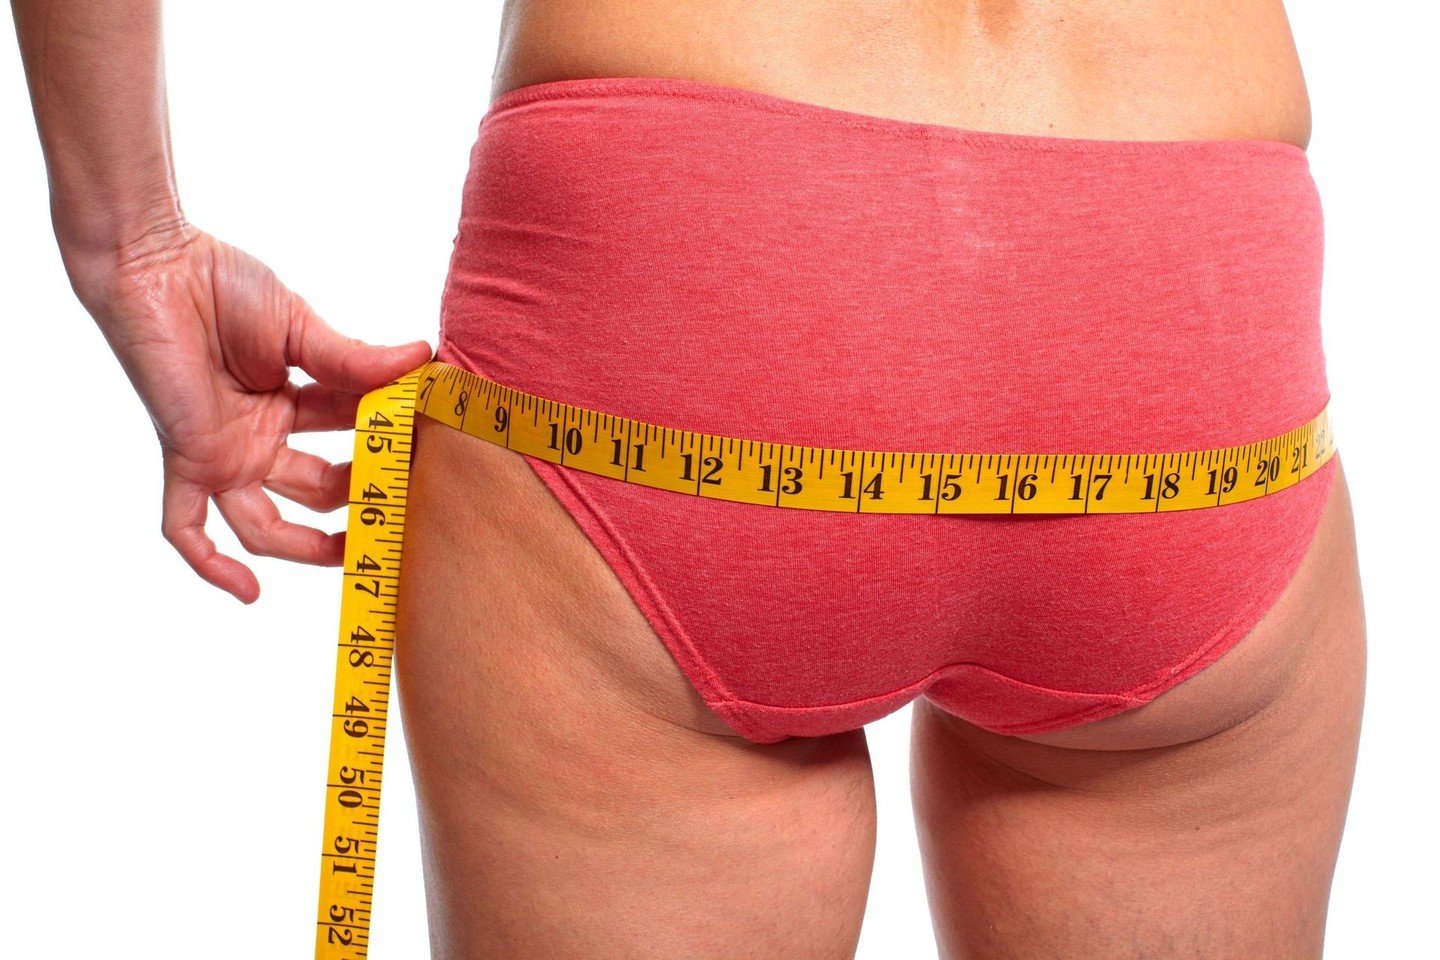 riebalus deginantys apatiniai drabužiai 220 svarų svorio moteris